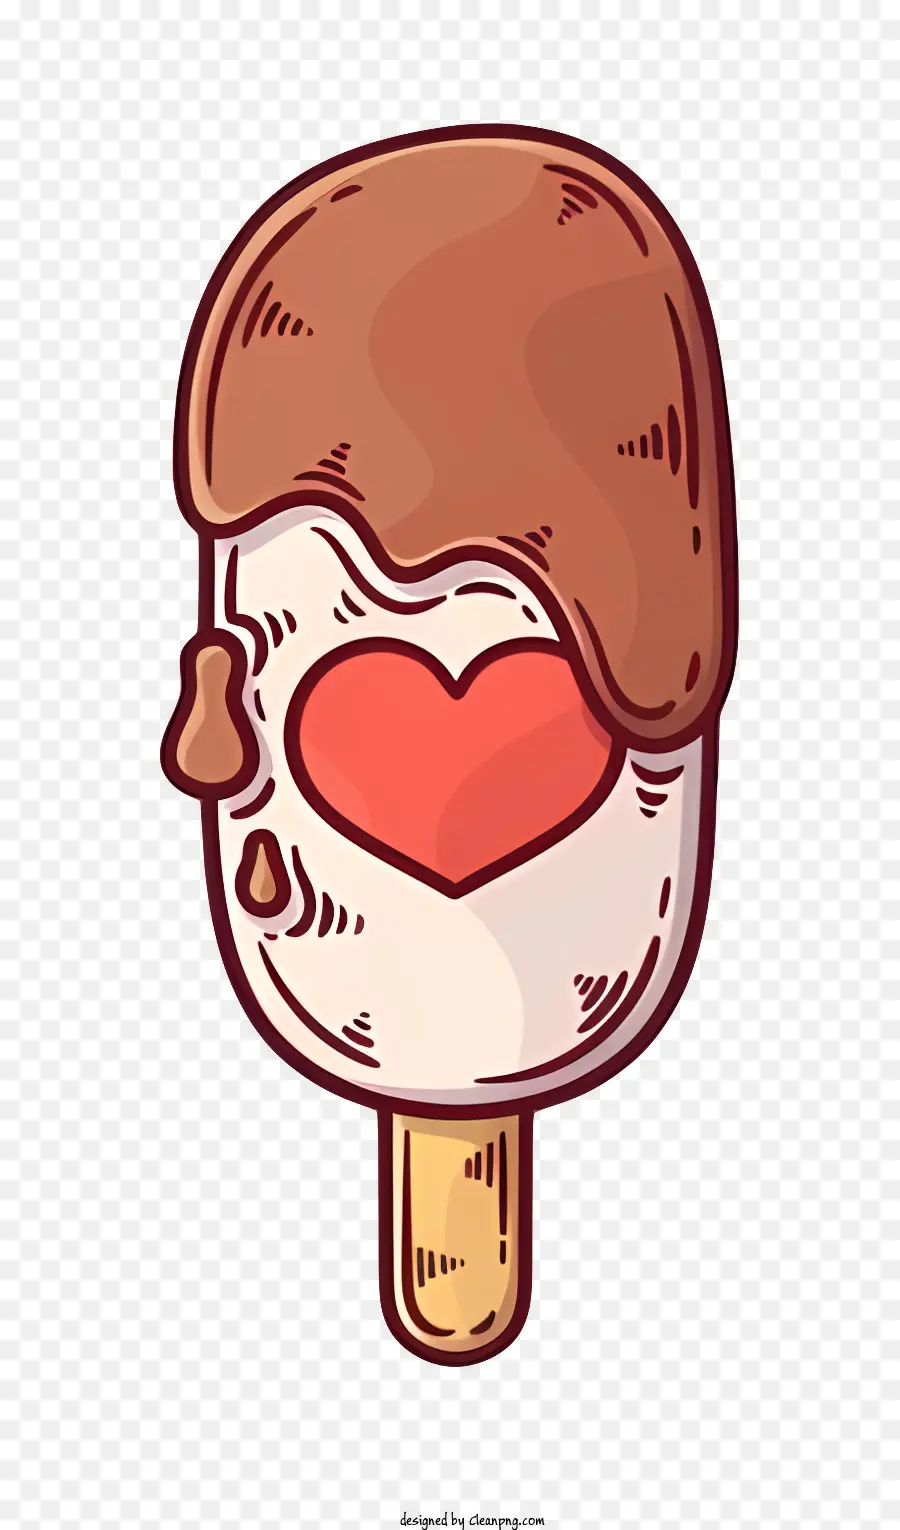 Lollipop cioccolato Lollipop a forma di cuore Lollipop Cioccolato Cioccolato Carampa a forma di cuore Rosso Chocolate Heart - Lollipop di cuore al cioccolato marrone con turbinio bianco e cuore rosso